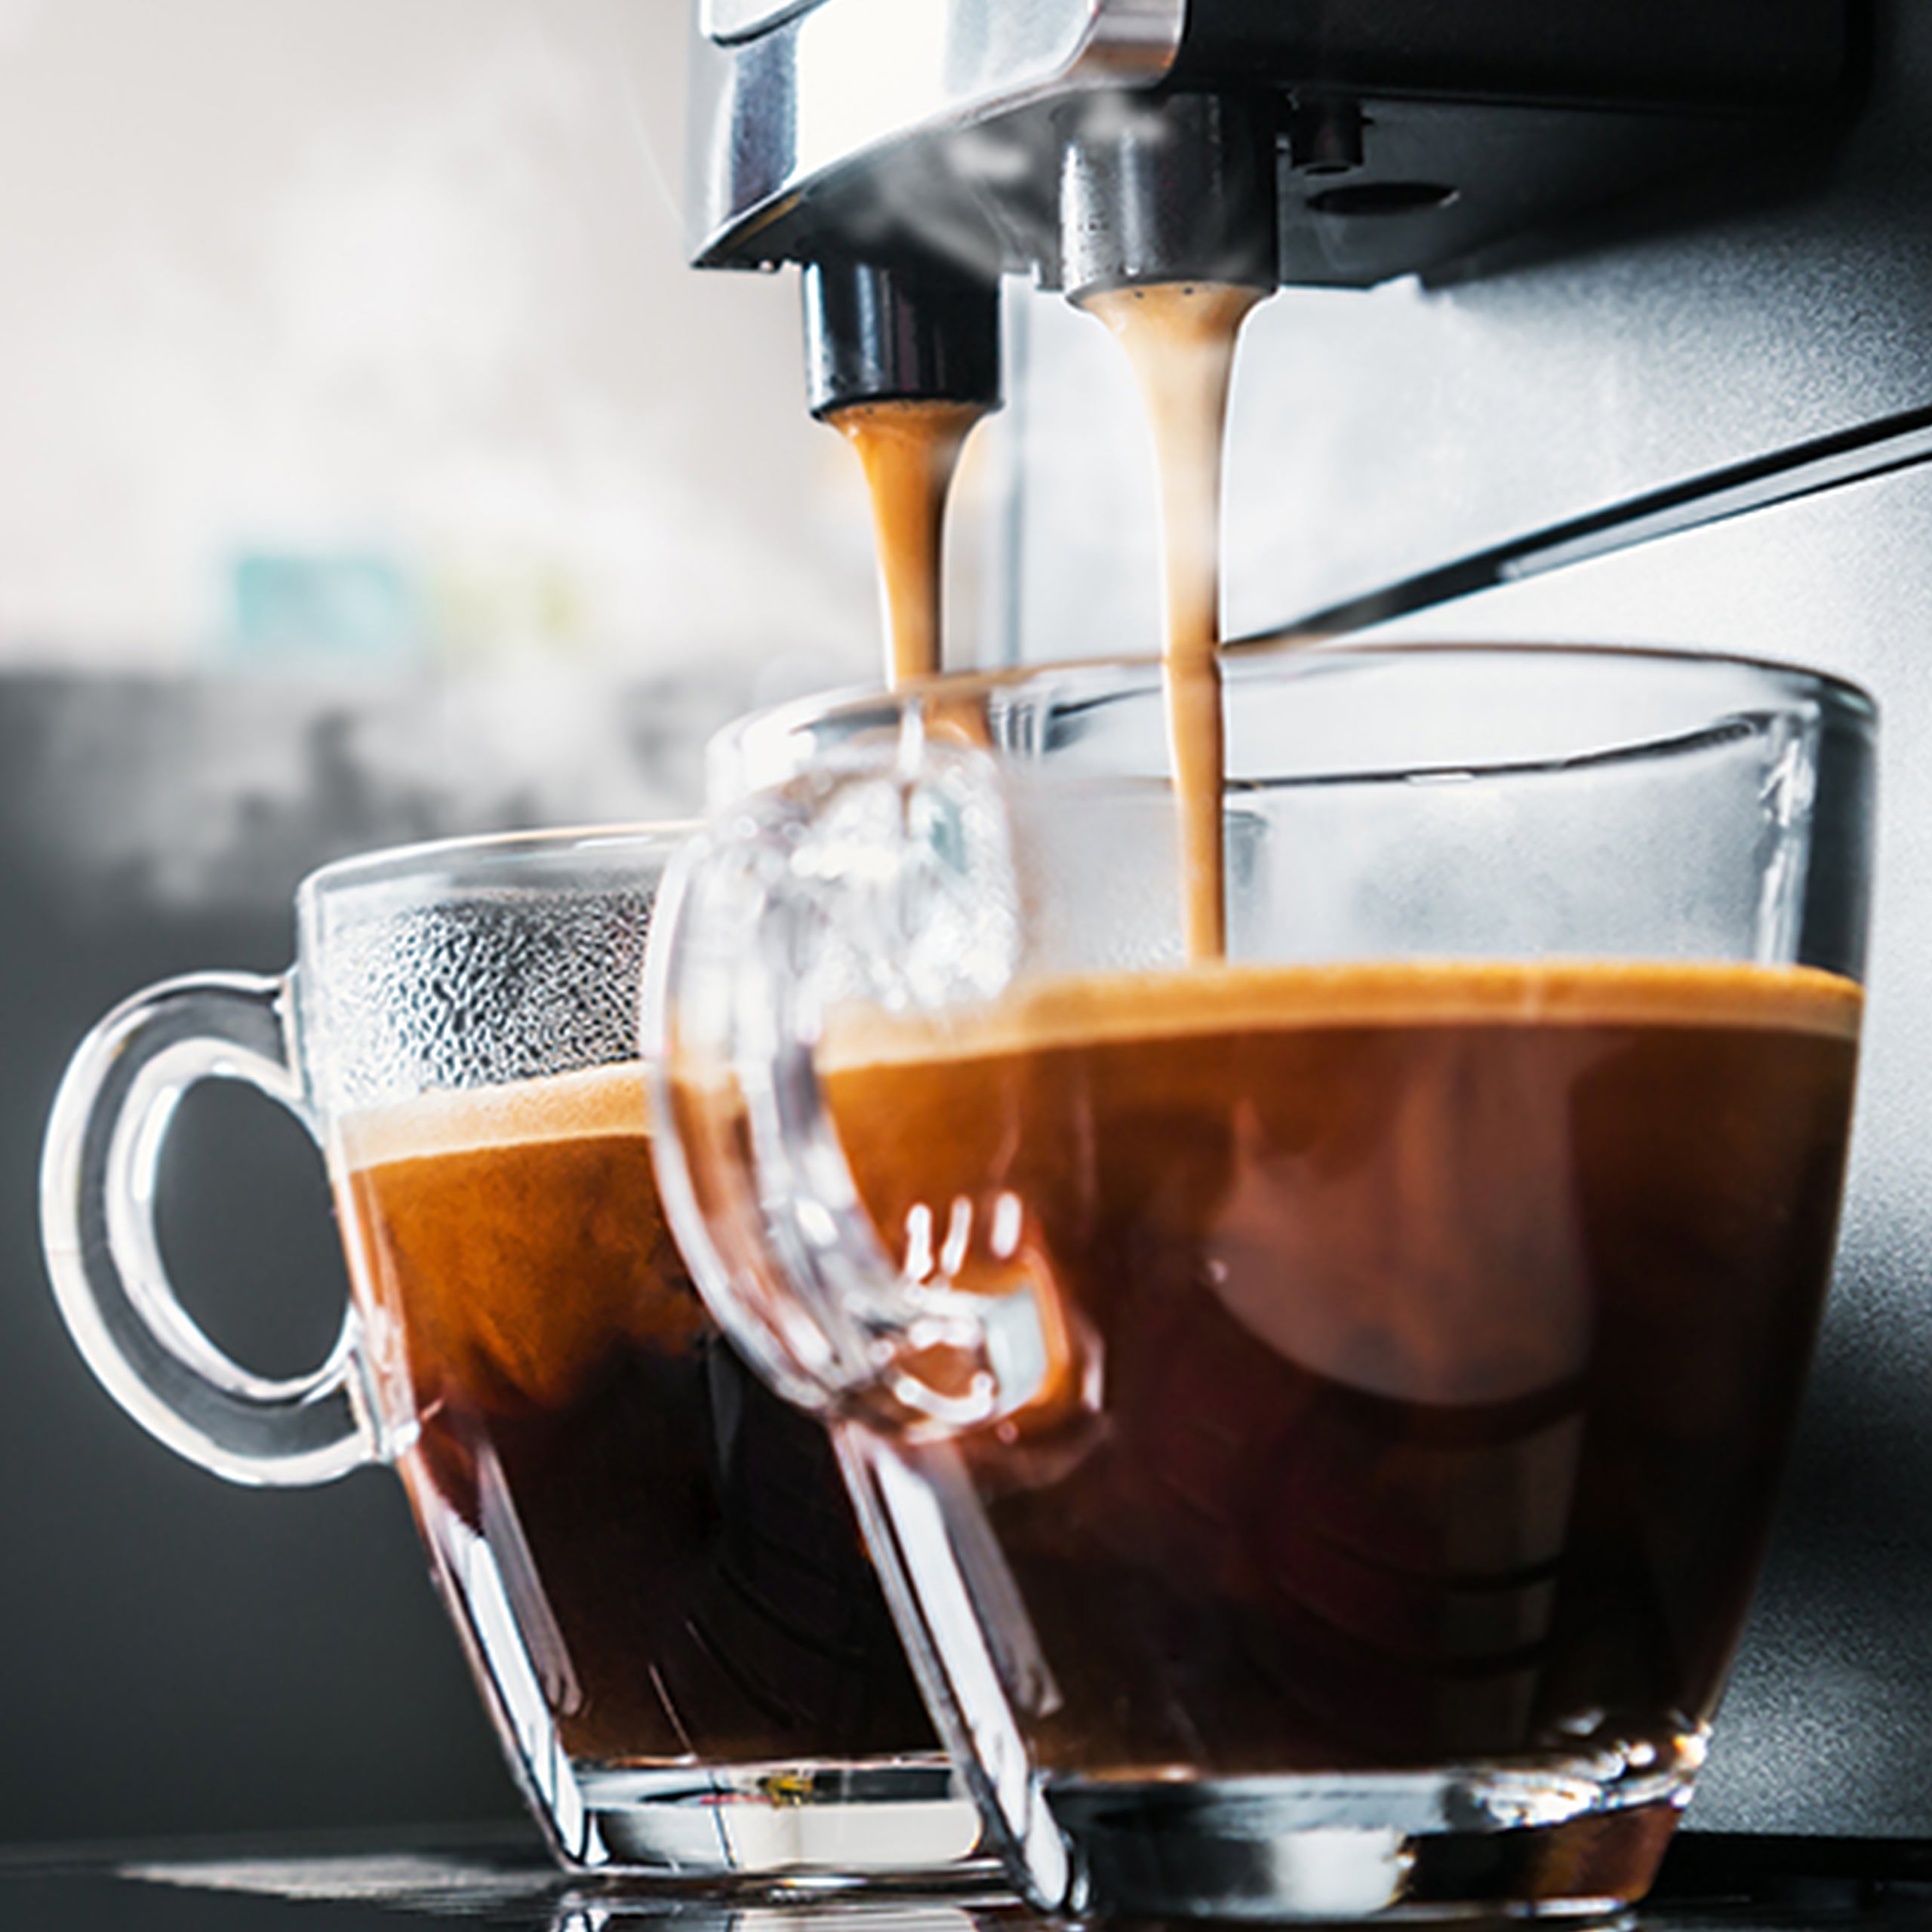 BiOHY Reinigungstabletten für Kaffeevollautomaten, Entkalkungstabletten, Kaffeevollautomaten Entkalker Tabs, Kaffeemaschinen Reinigungstabs